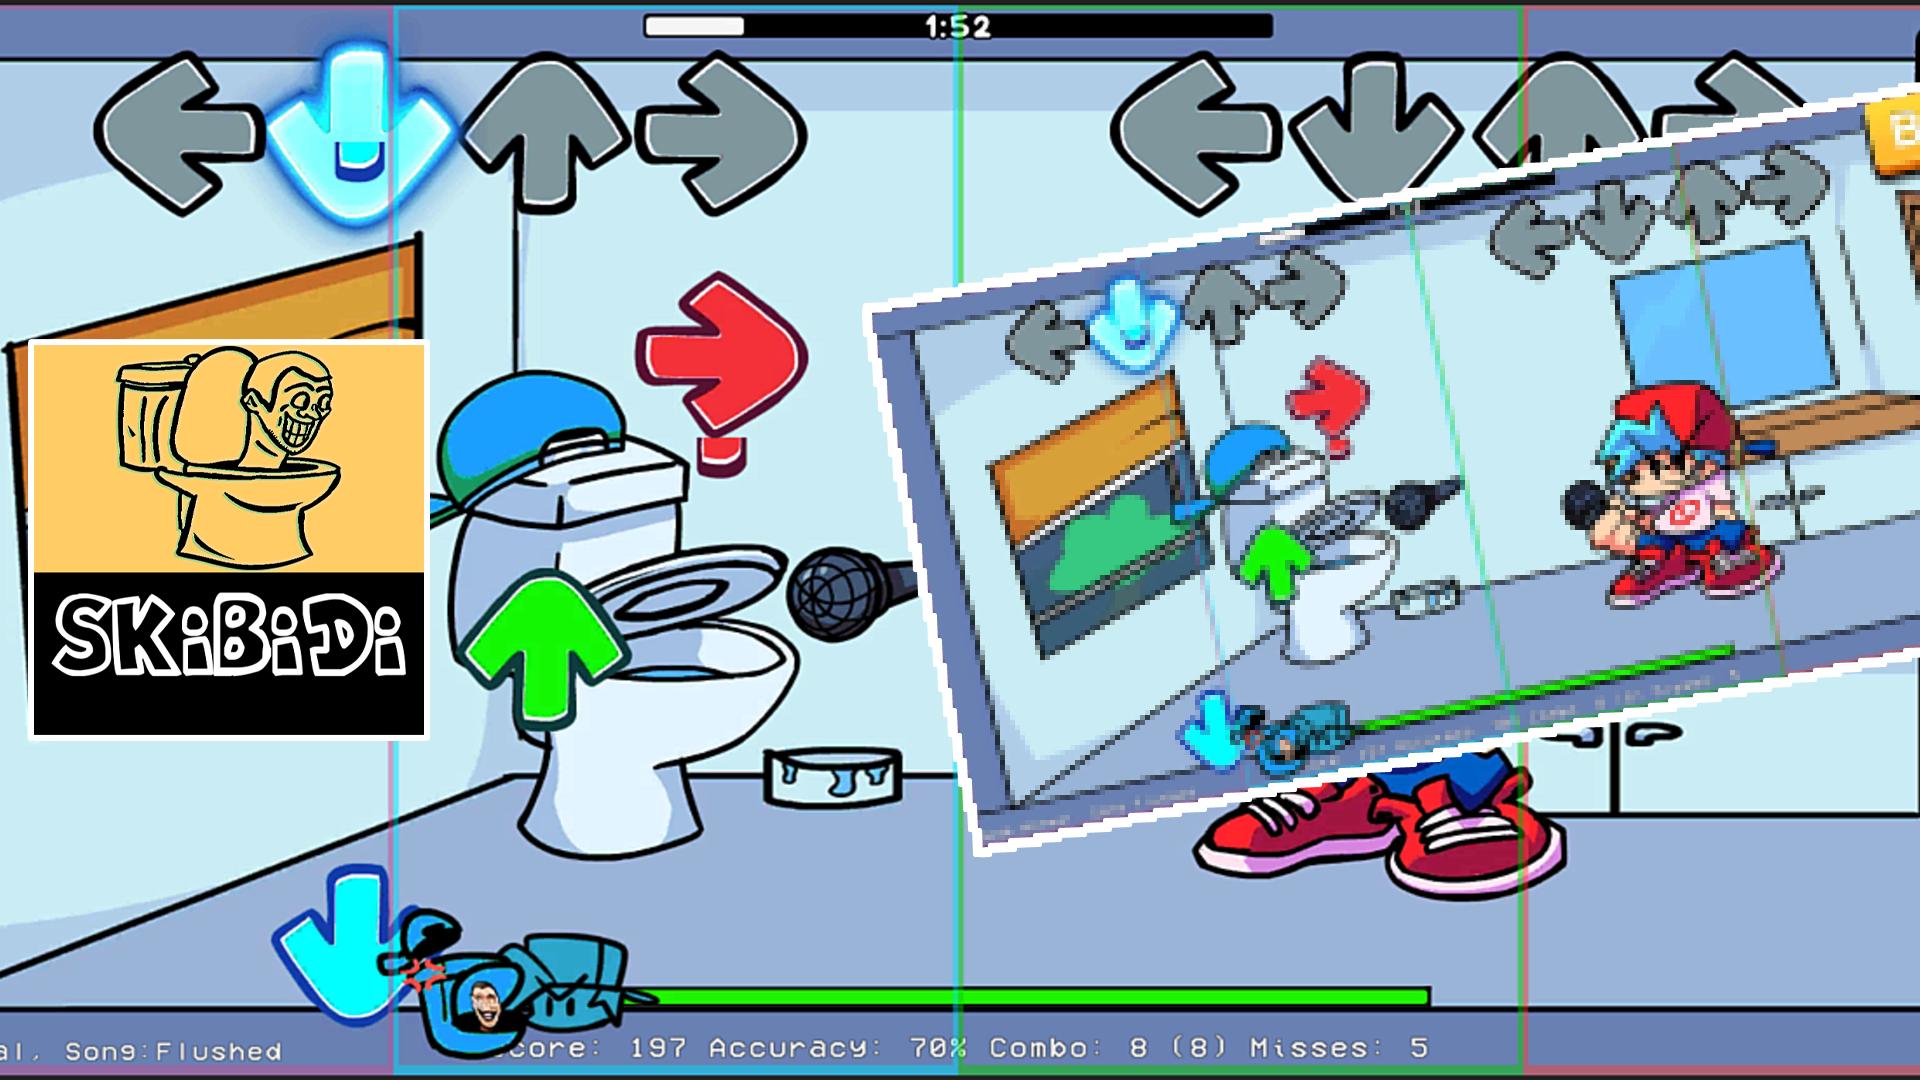 Игра туалет 5. Скиби туалет в графическом редакторе. Файлы игры туалет лаборатория. Защита башни туалета Skibi коды. Взломанная игра туалет лаборатория.